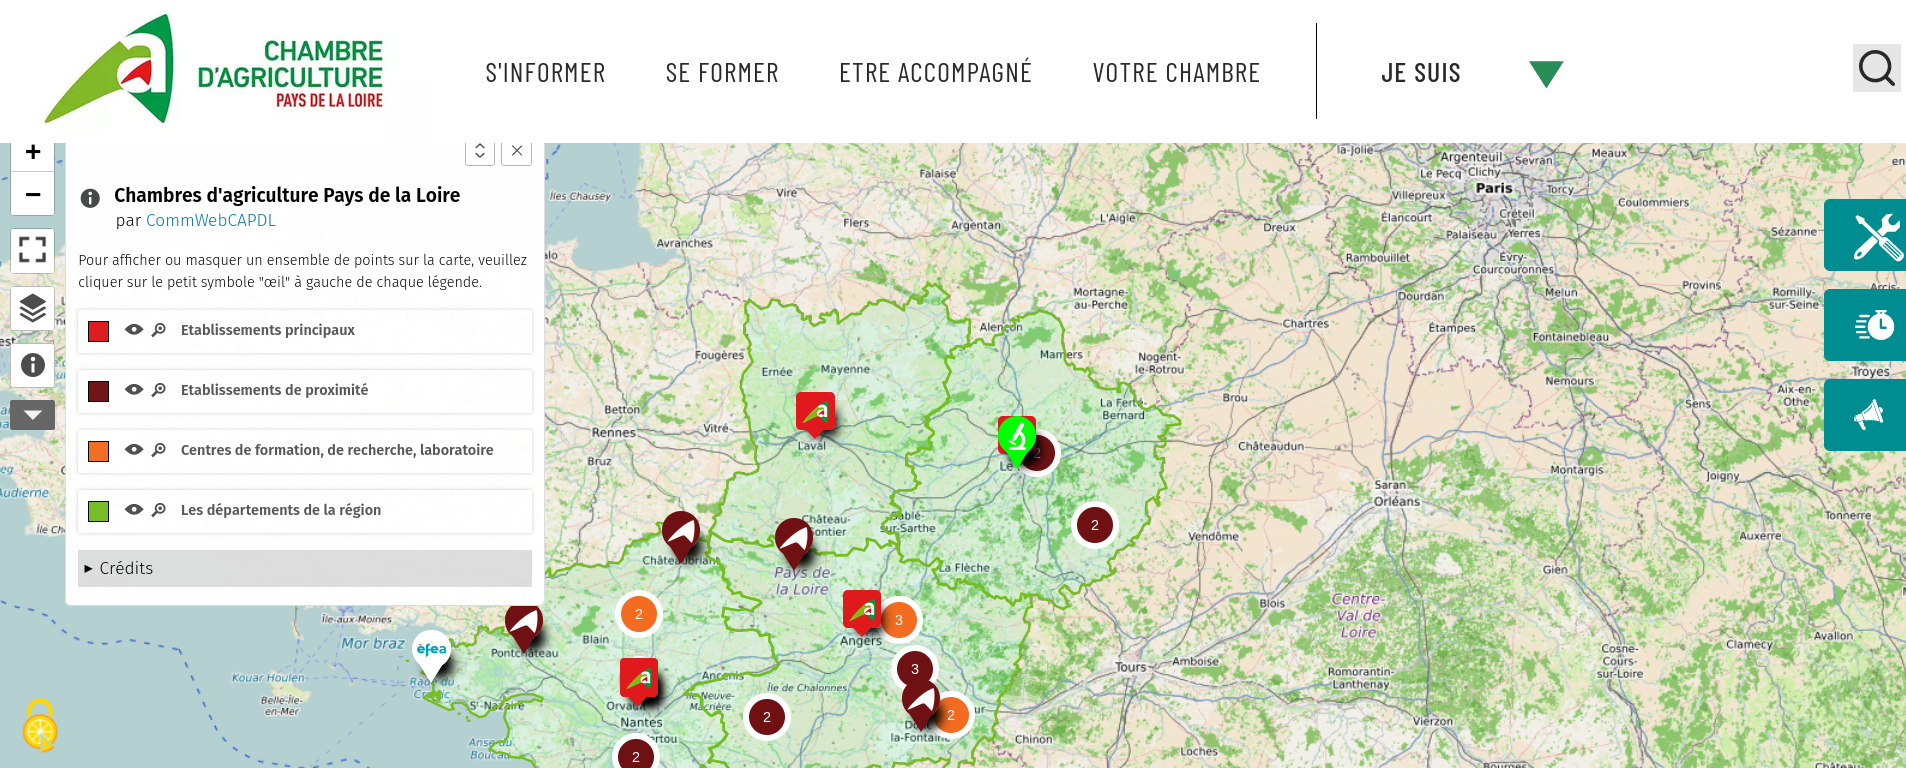 Une carte incrustée sur le site de Chambre d’agriculture Pays de la Loire.